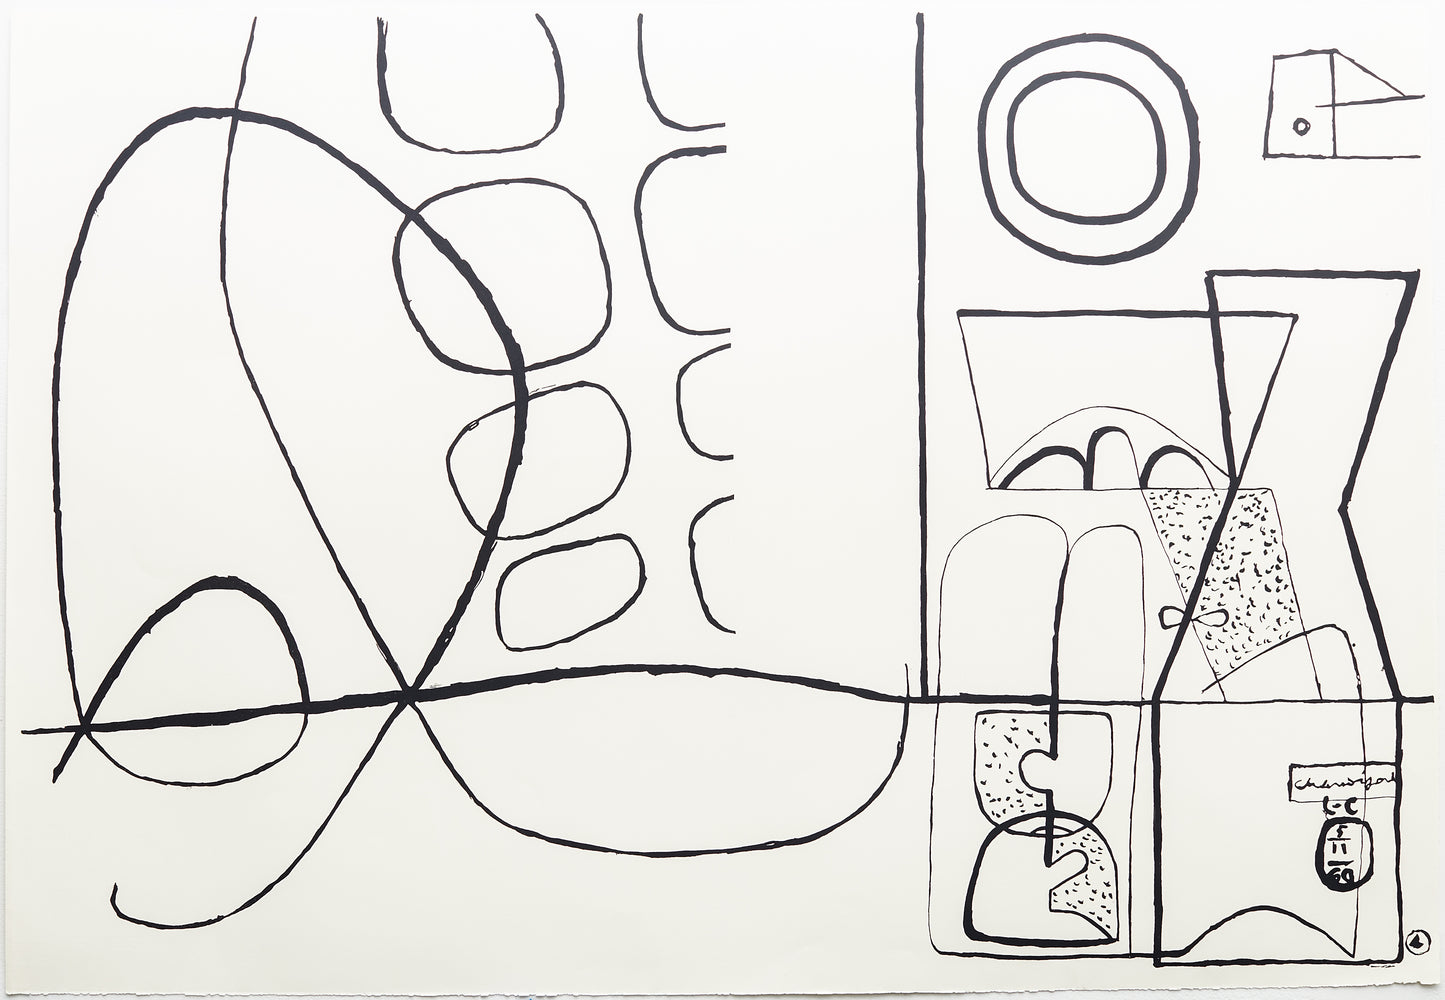 Jeux (B&W) by Le Corbusier, 1962 - Mourlot Editions - Fine_Art - Poster - Lithograph - Wall Art - Vintage - Prints - Original